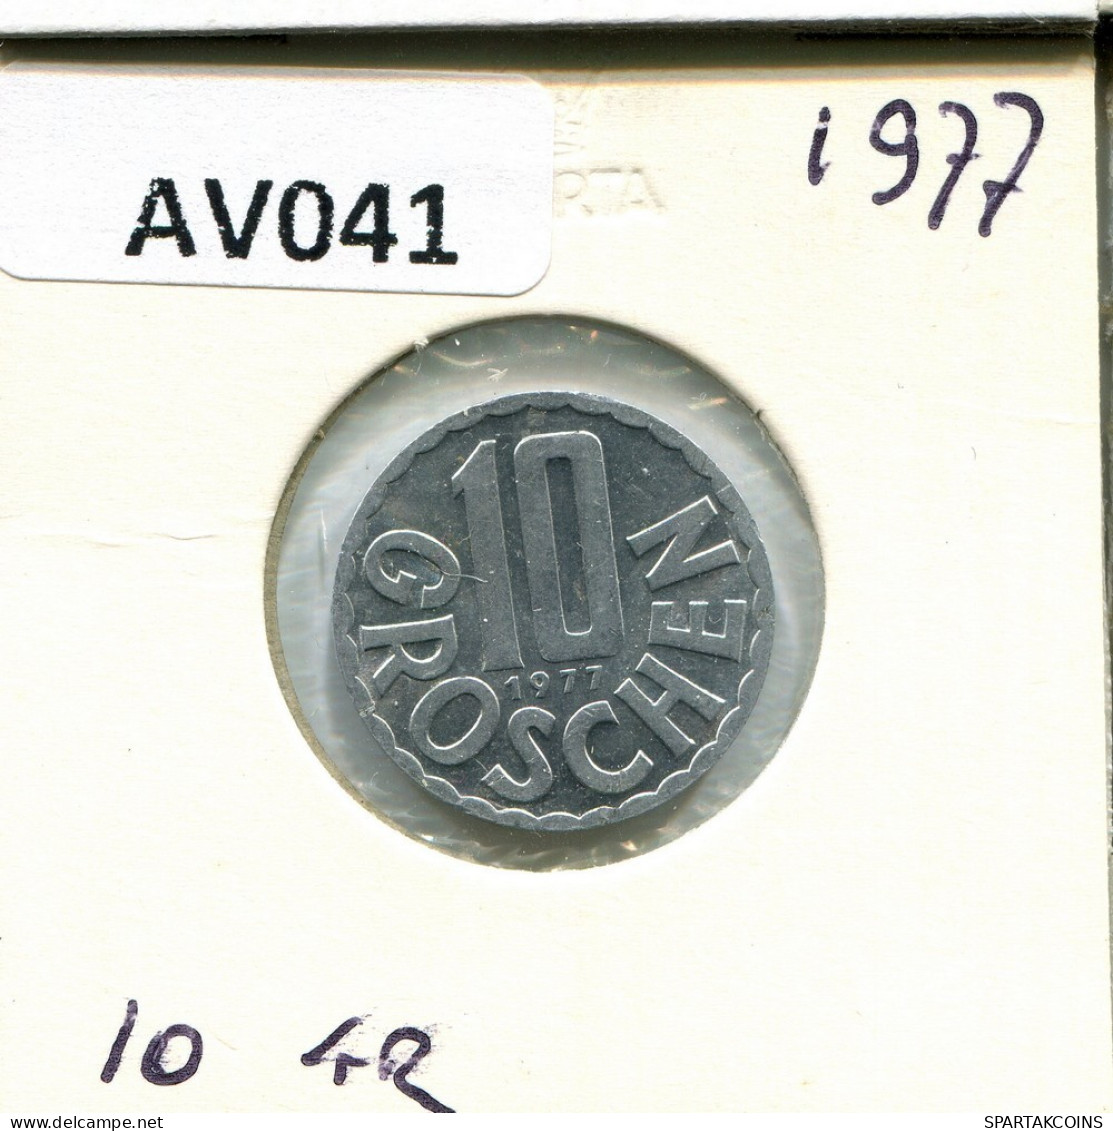 10 GROSCHEN 1977 AUSTRIA Coin #AV041.U.A - Oesterreich